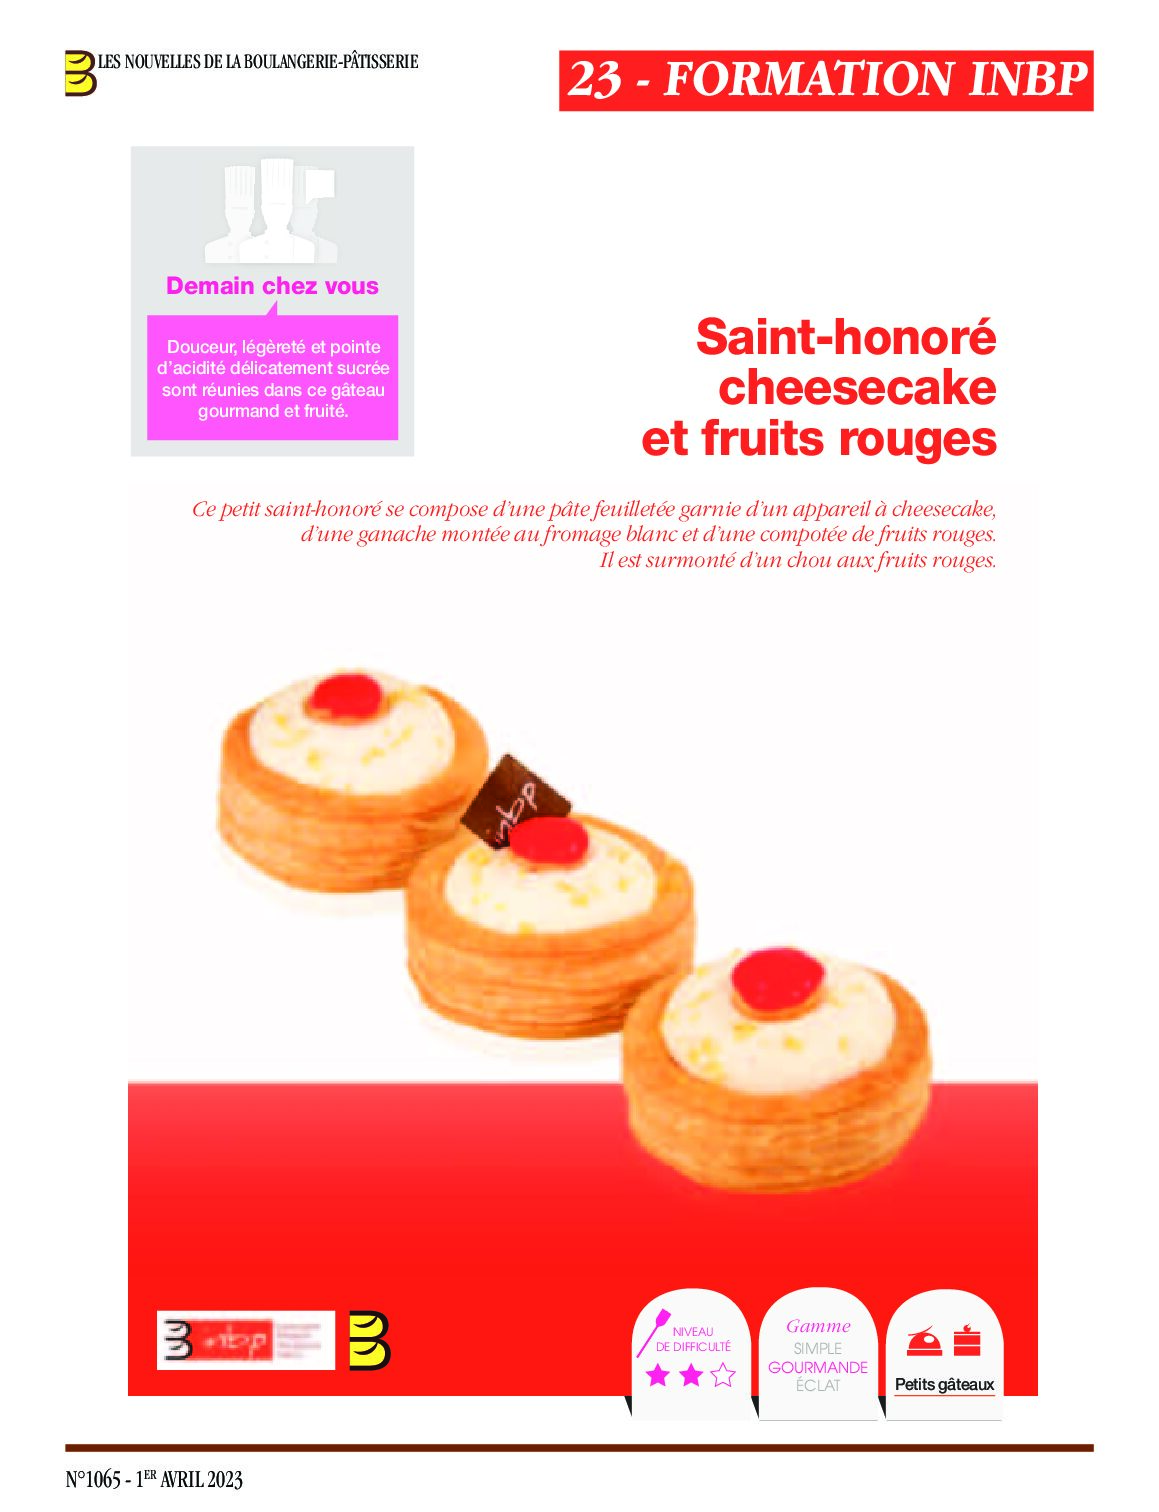 Saint-honoré cheesecake et fruits rouges